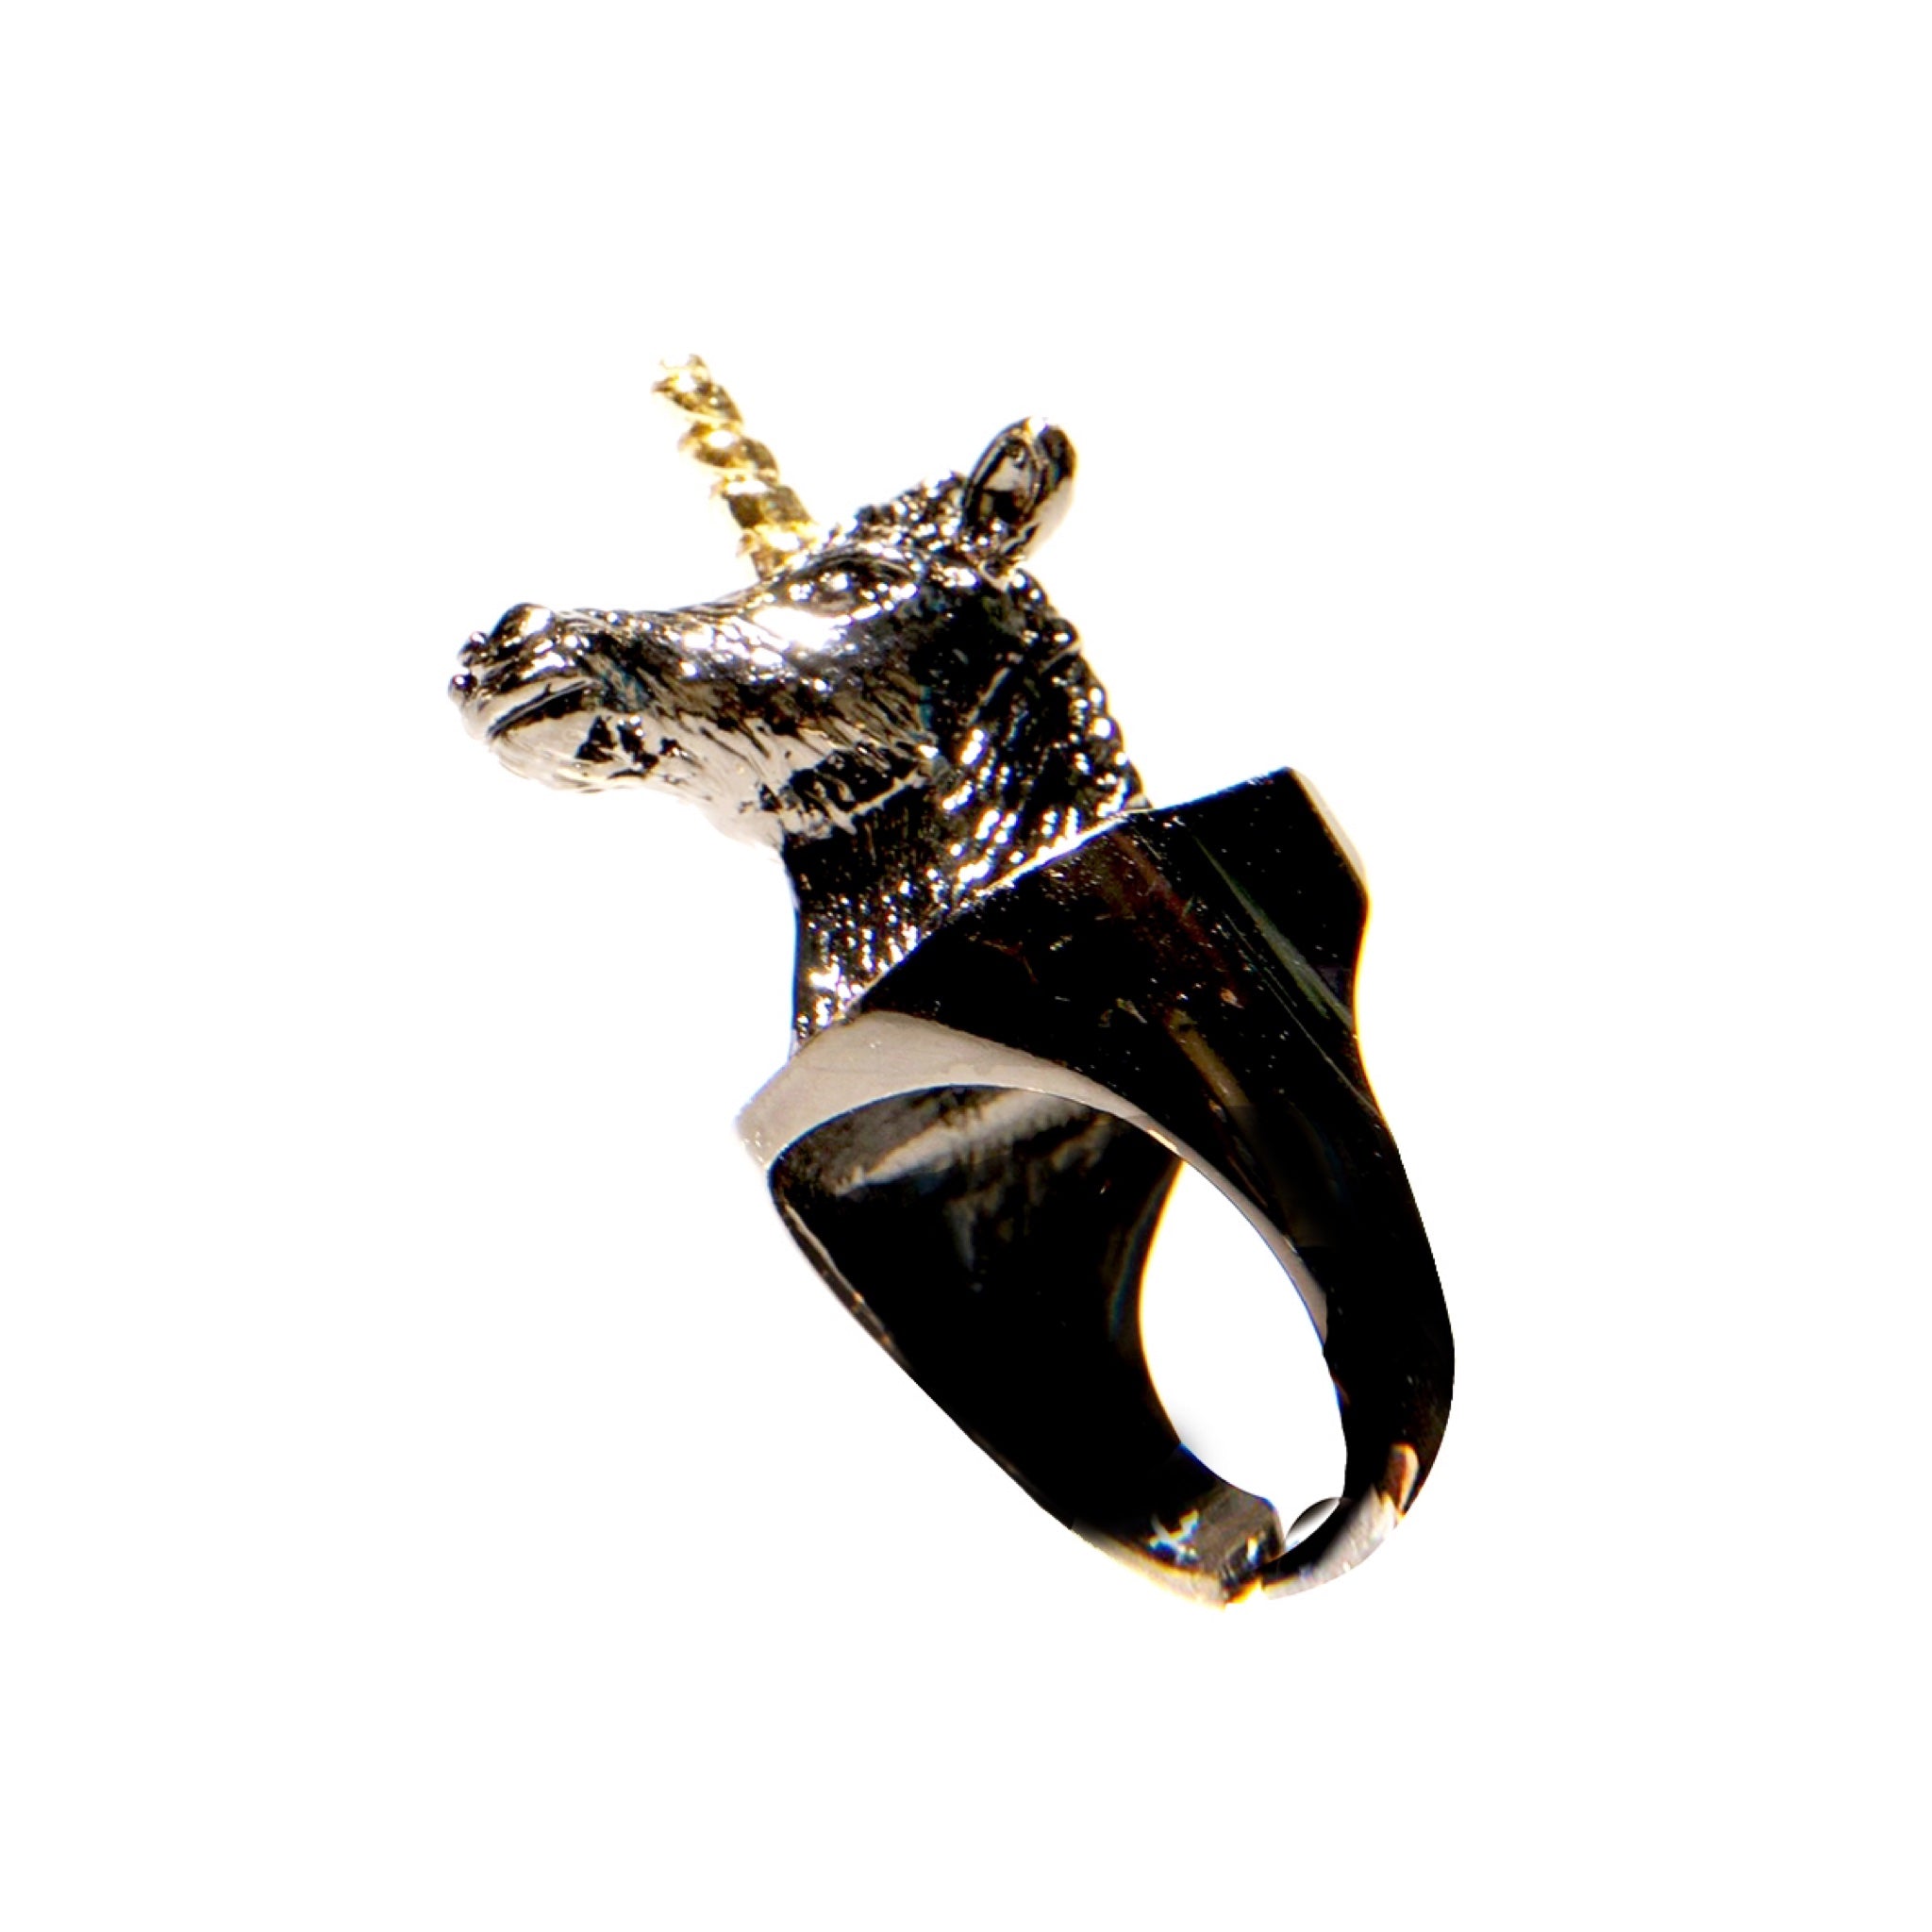 Unicorn metal ring